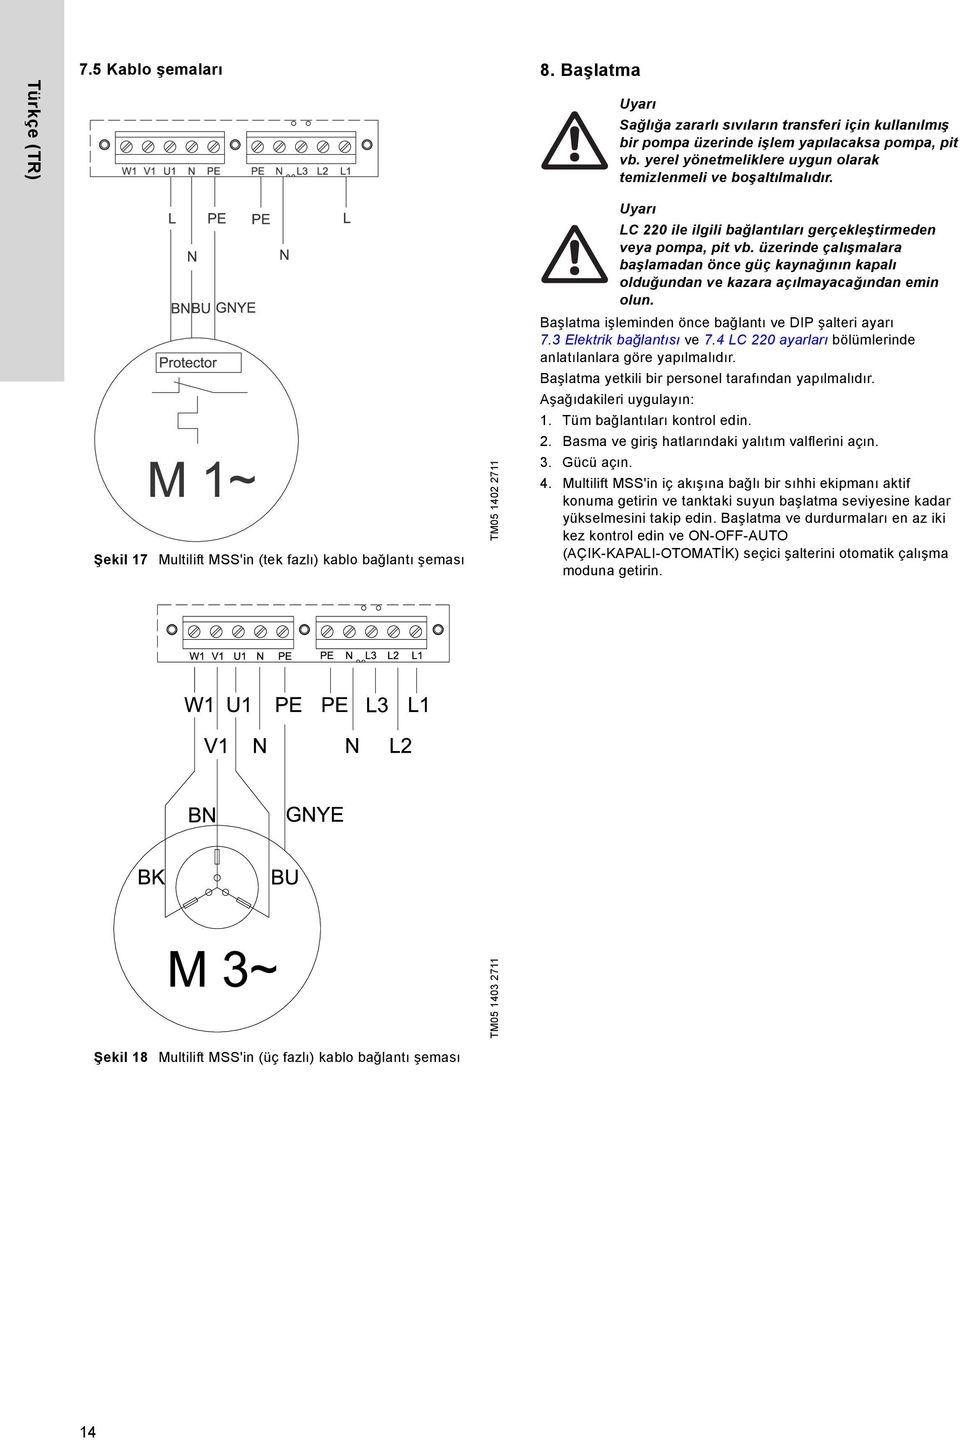 Şekil 17 Multilift MSS'in (tek fazlı) kablo bağlantı şeması TM05 1402 2711 Uyarı LC 220 ile ilgili bağlantıları gerçekleştirmeden veya pompa, pit vb.